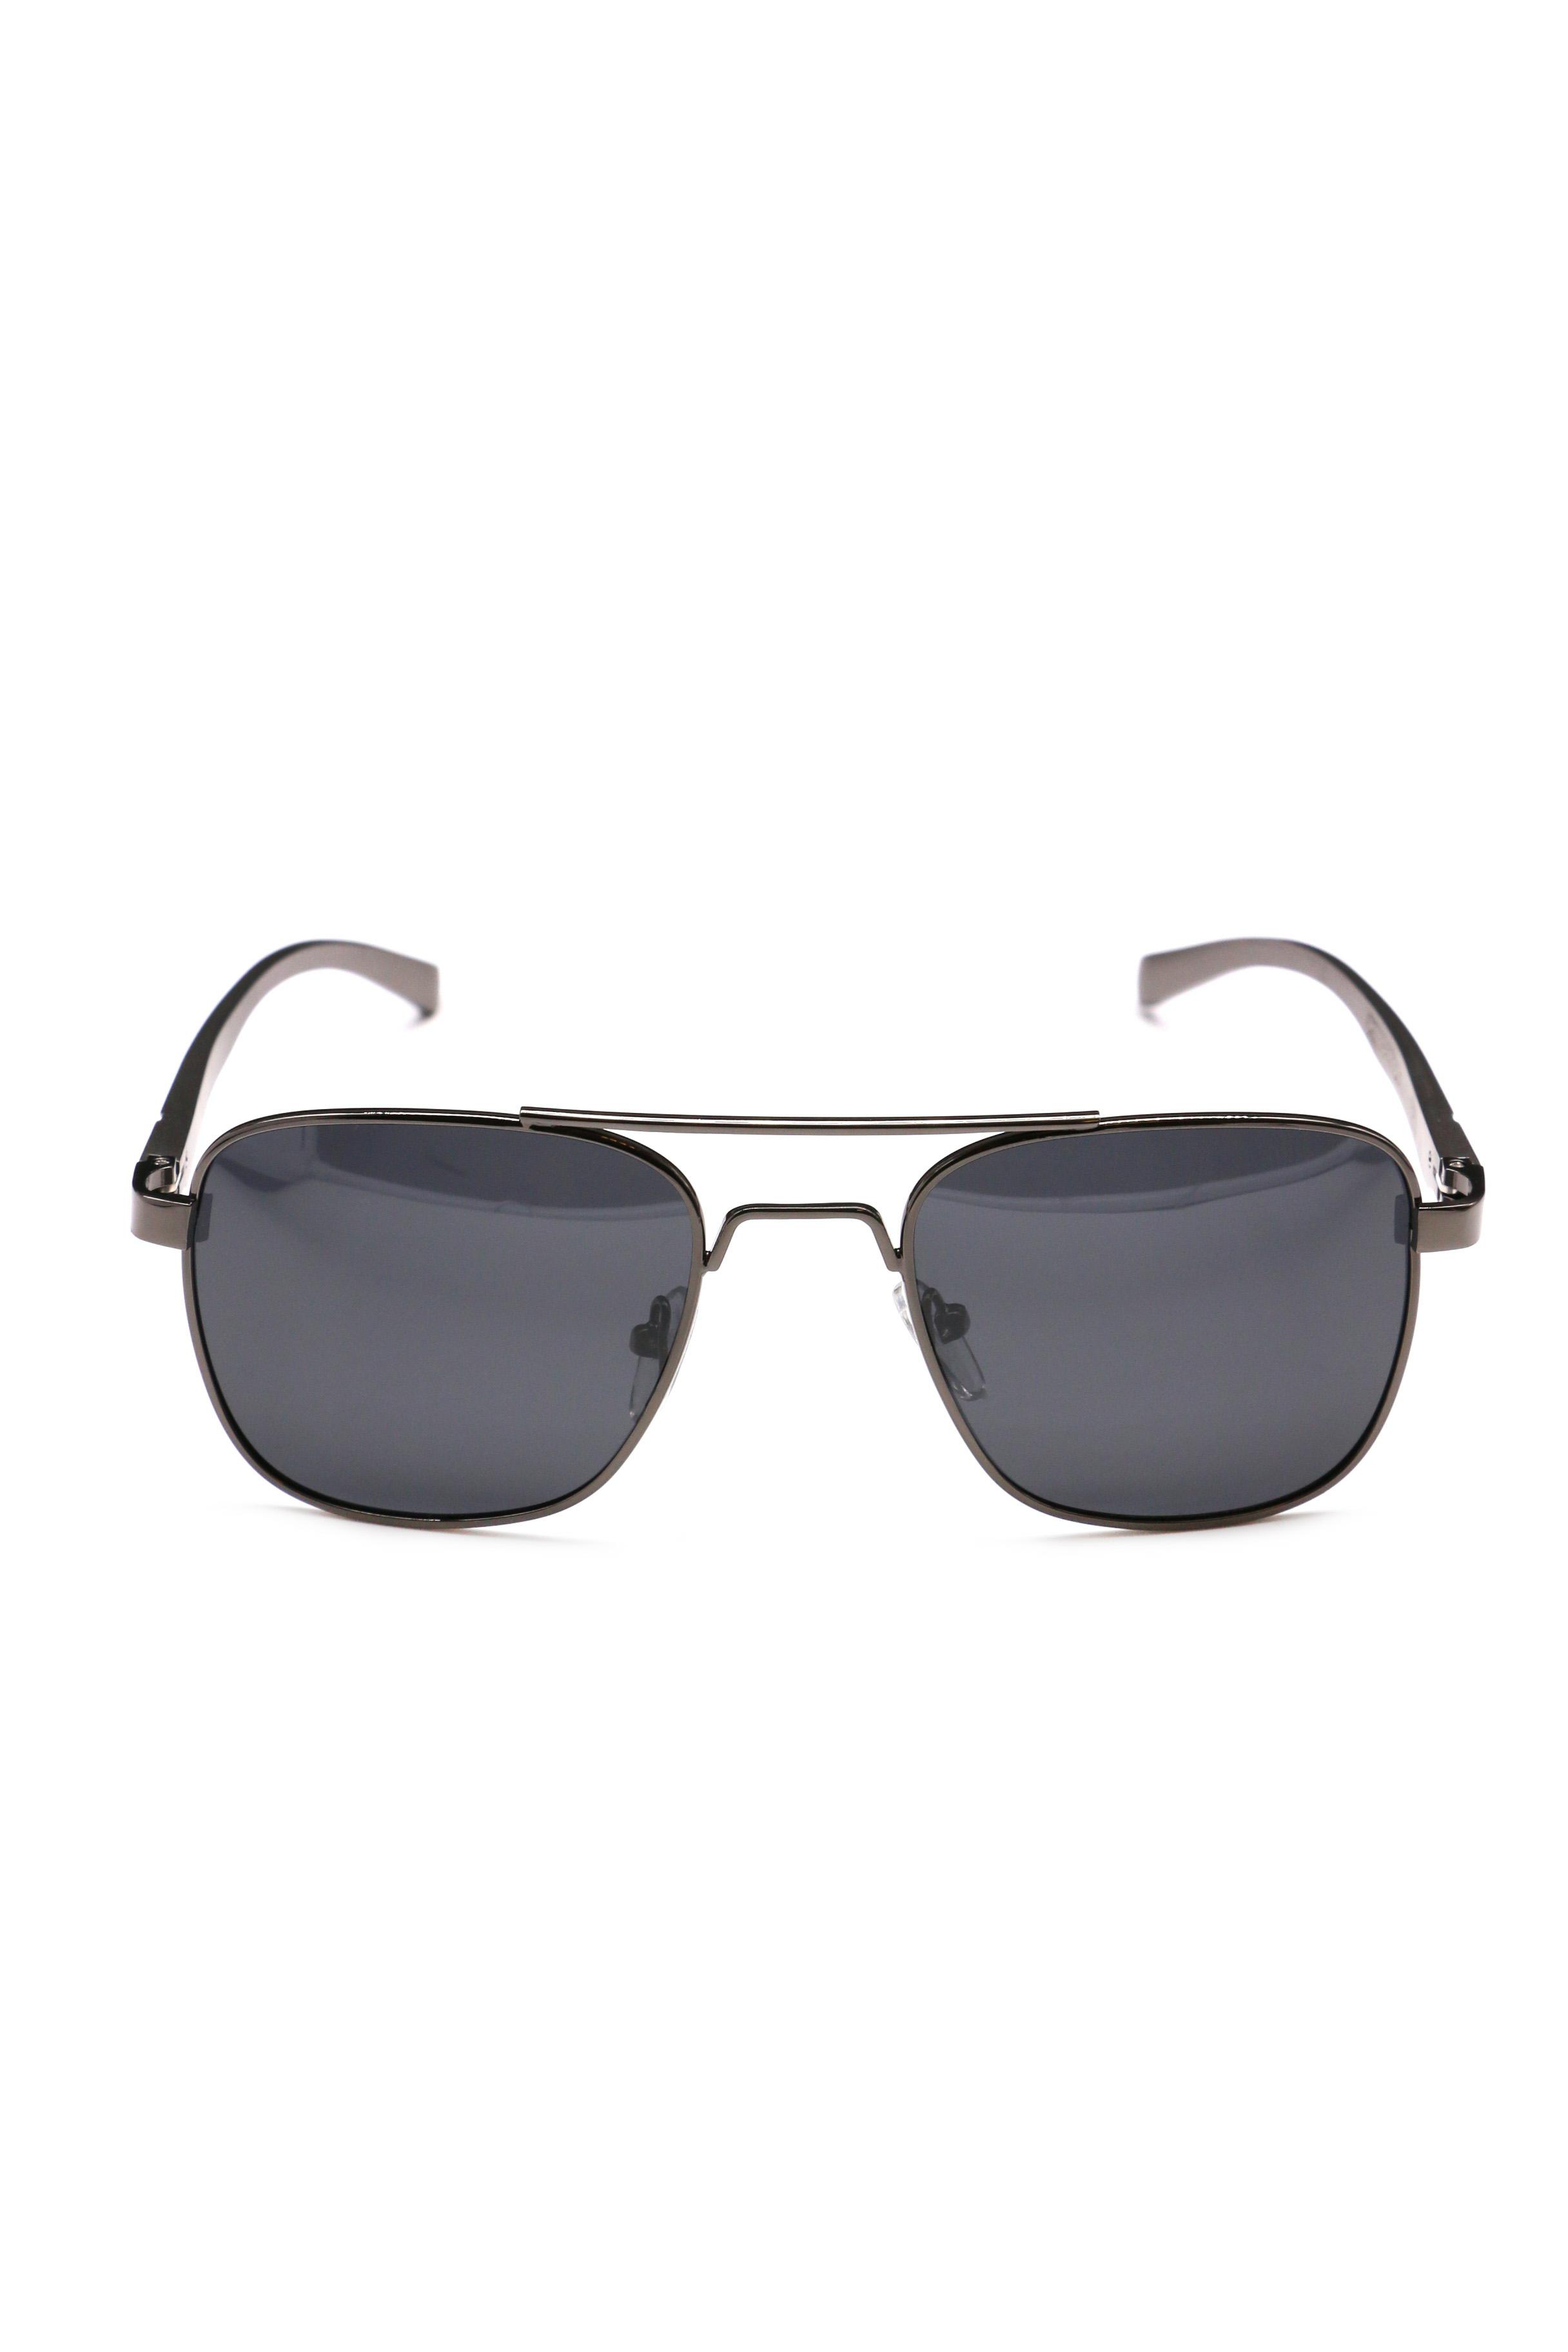 P1053-3, Солнцезащитные очки в алюминиевой оправе POLAR STYLE